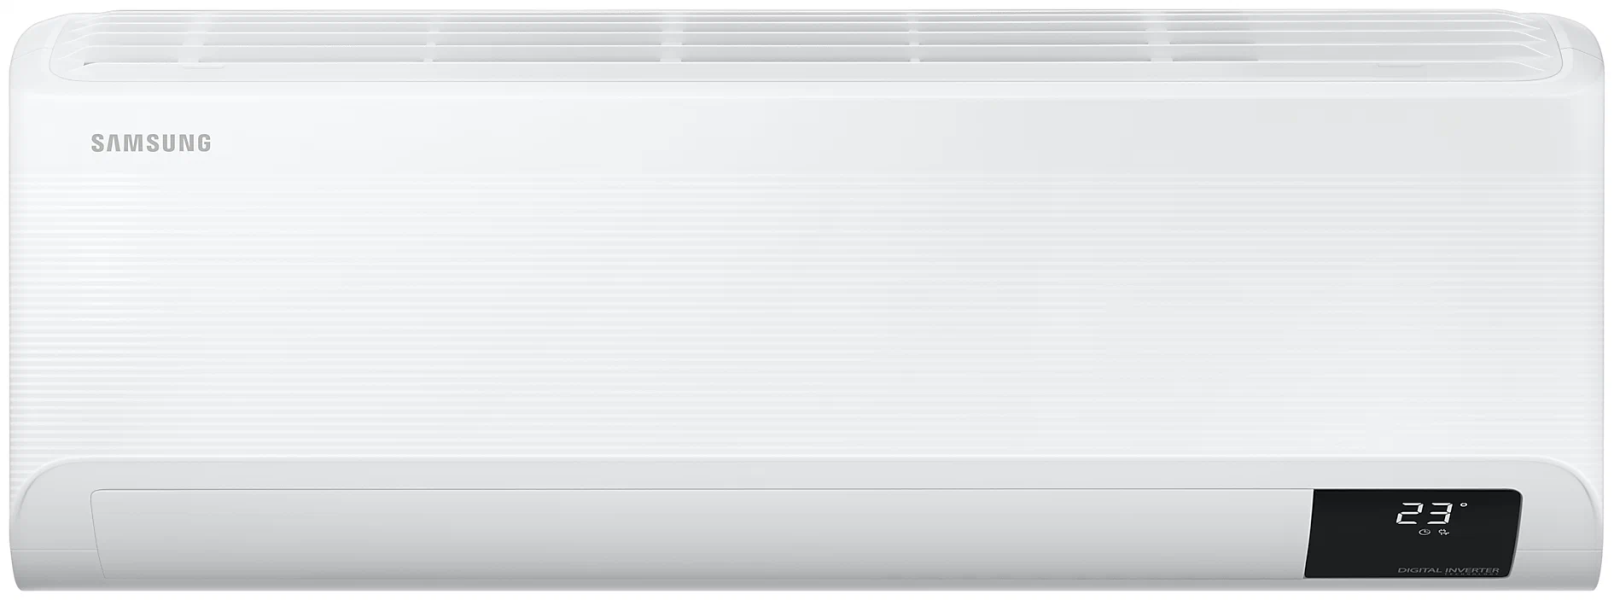 SAMSUNG Air conditioner AR12BSFCMWKNER